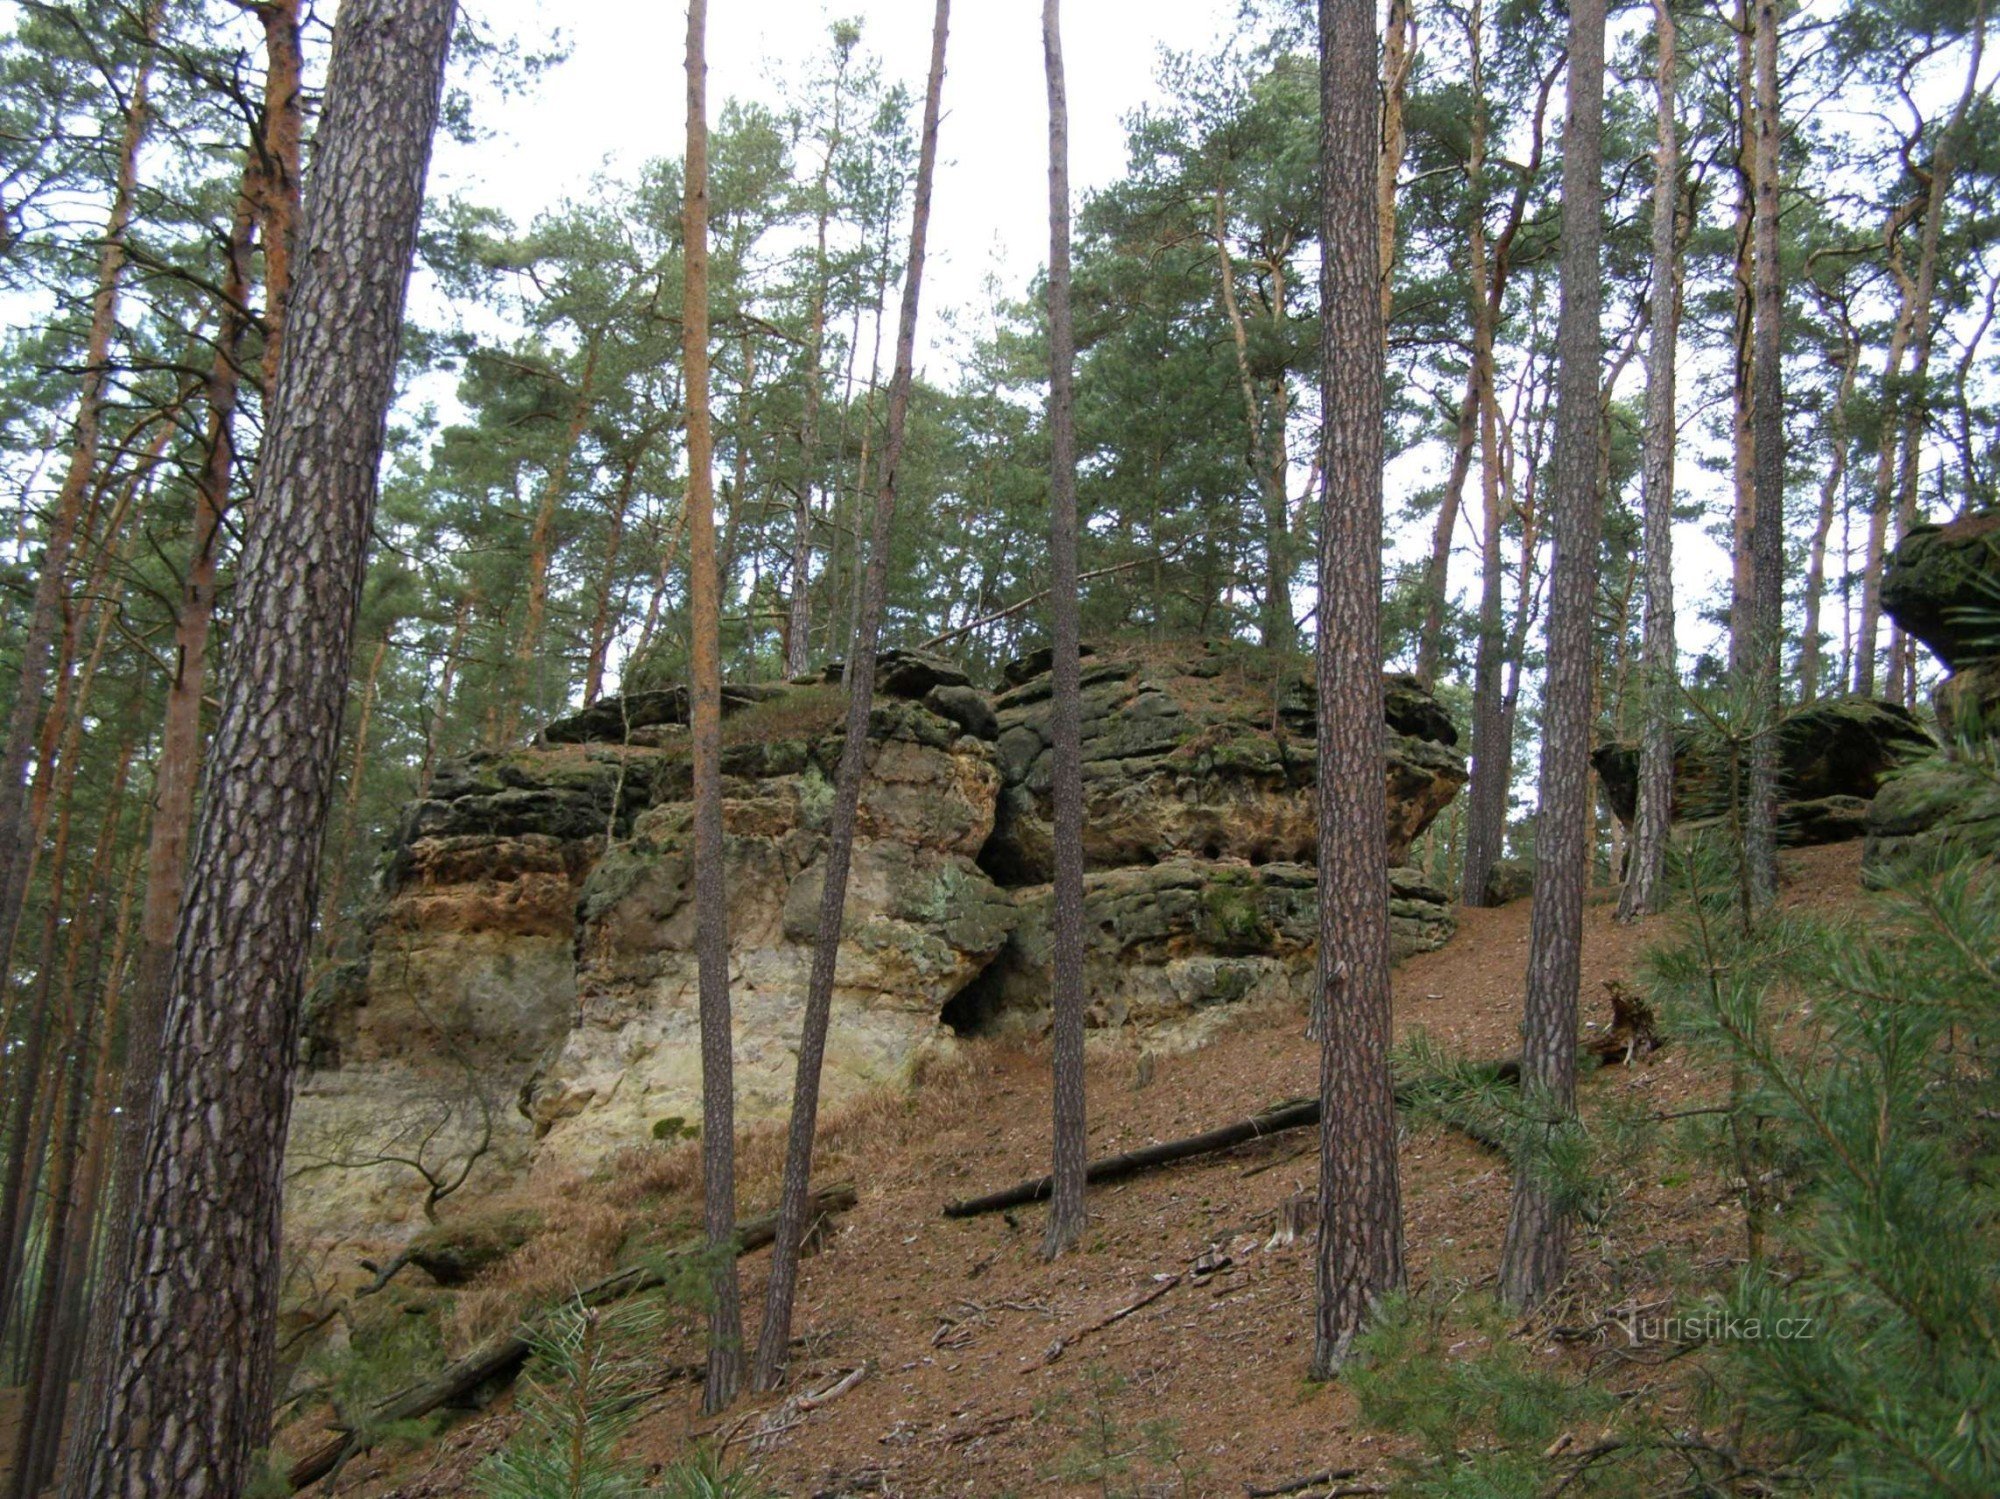 đá gần Cổng lớn